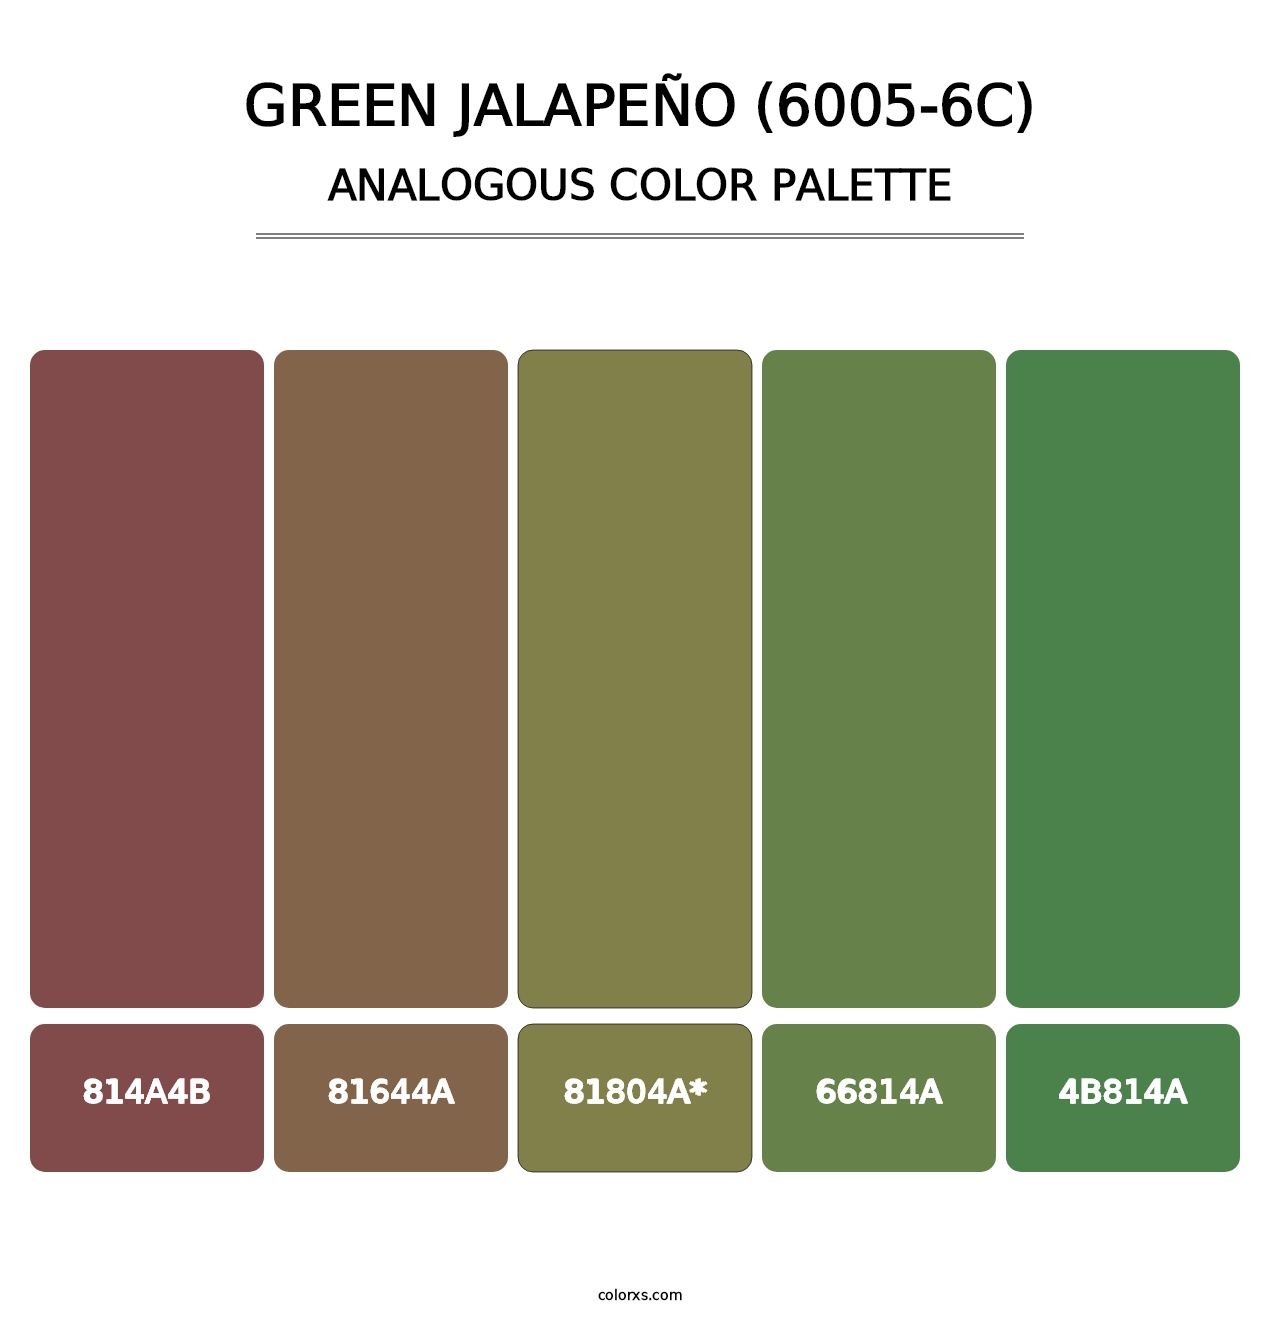 Green Jalapeño (6005-6C) - Analogous Color Palette